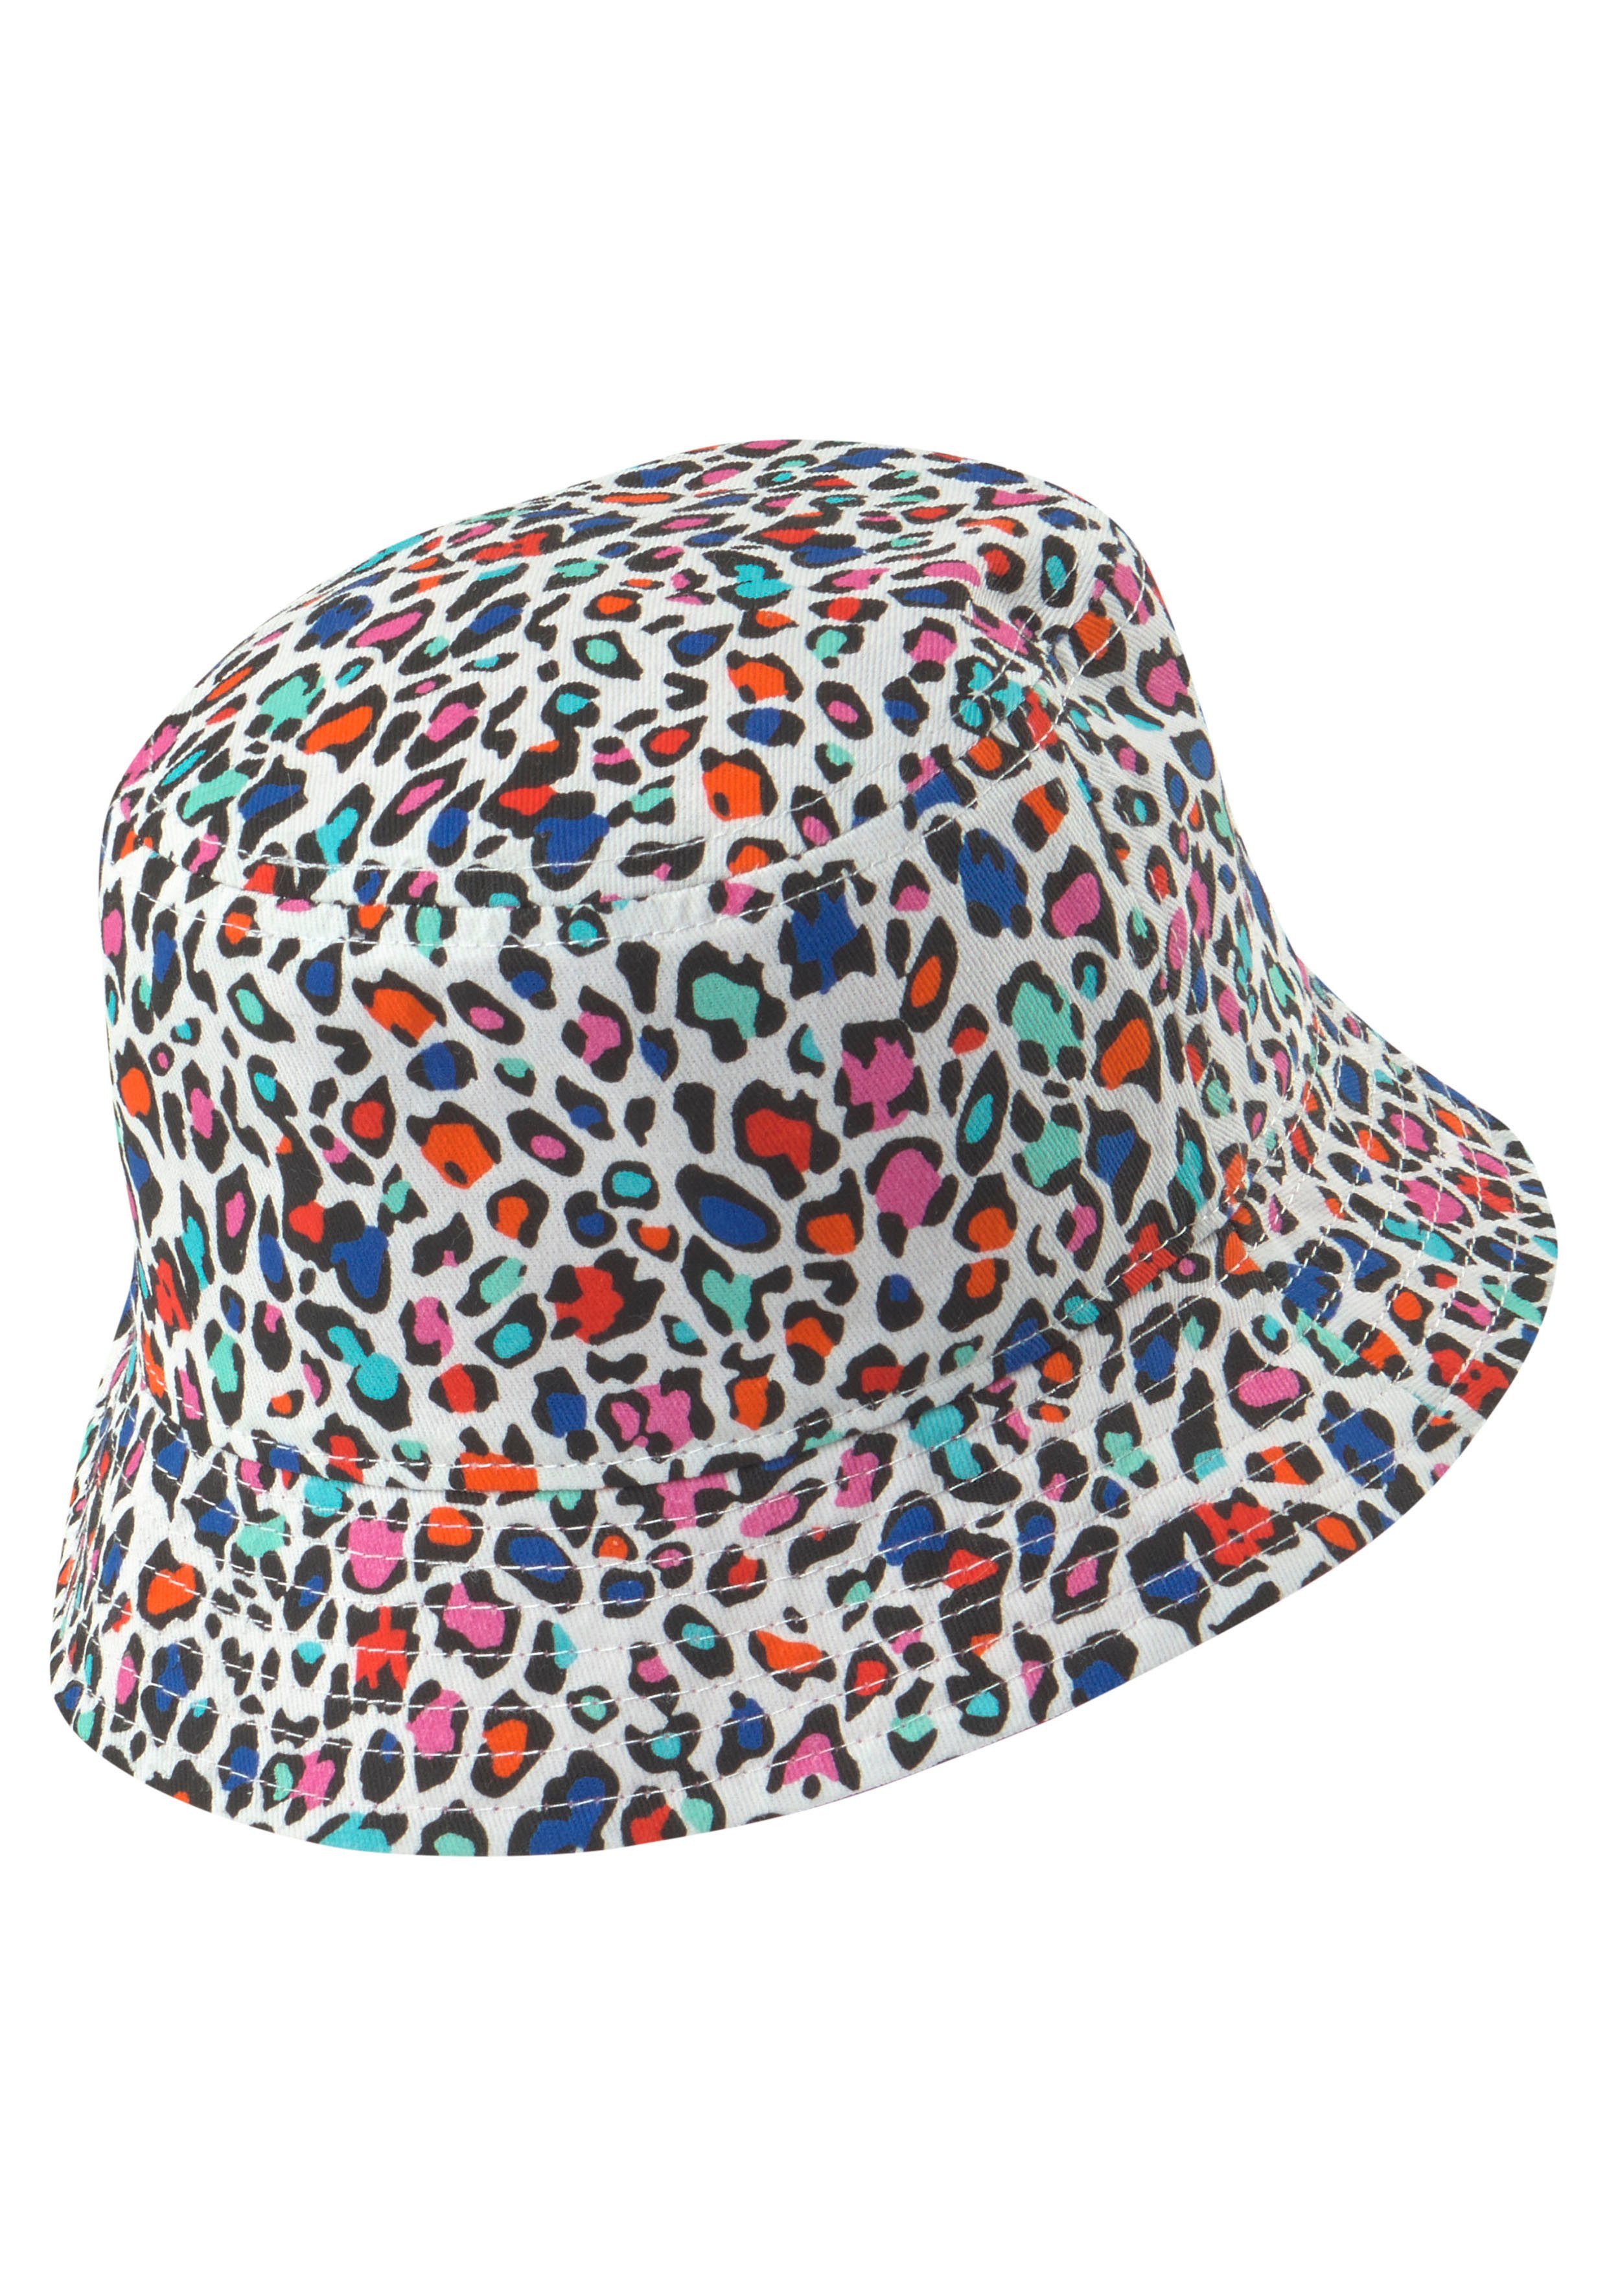 Fischerhut bunt-pink Barts Antigua Wendehut Hat